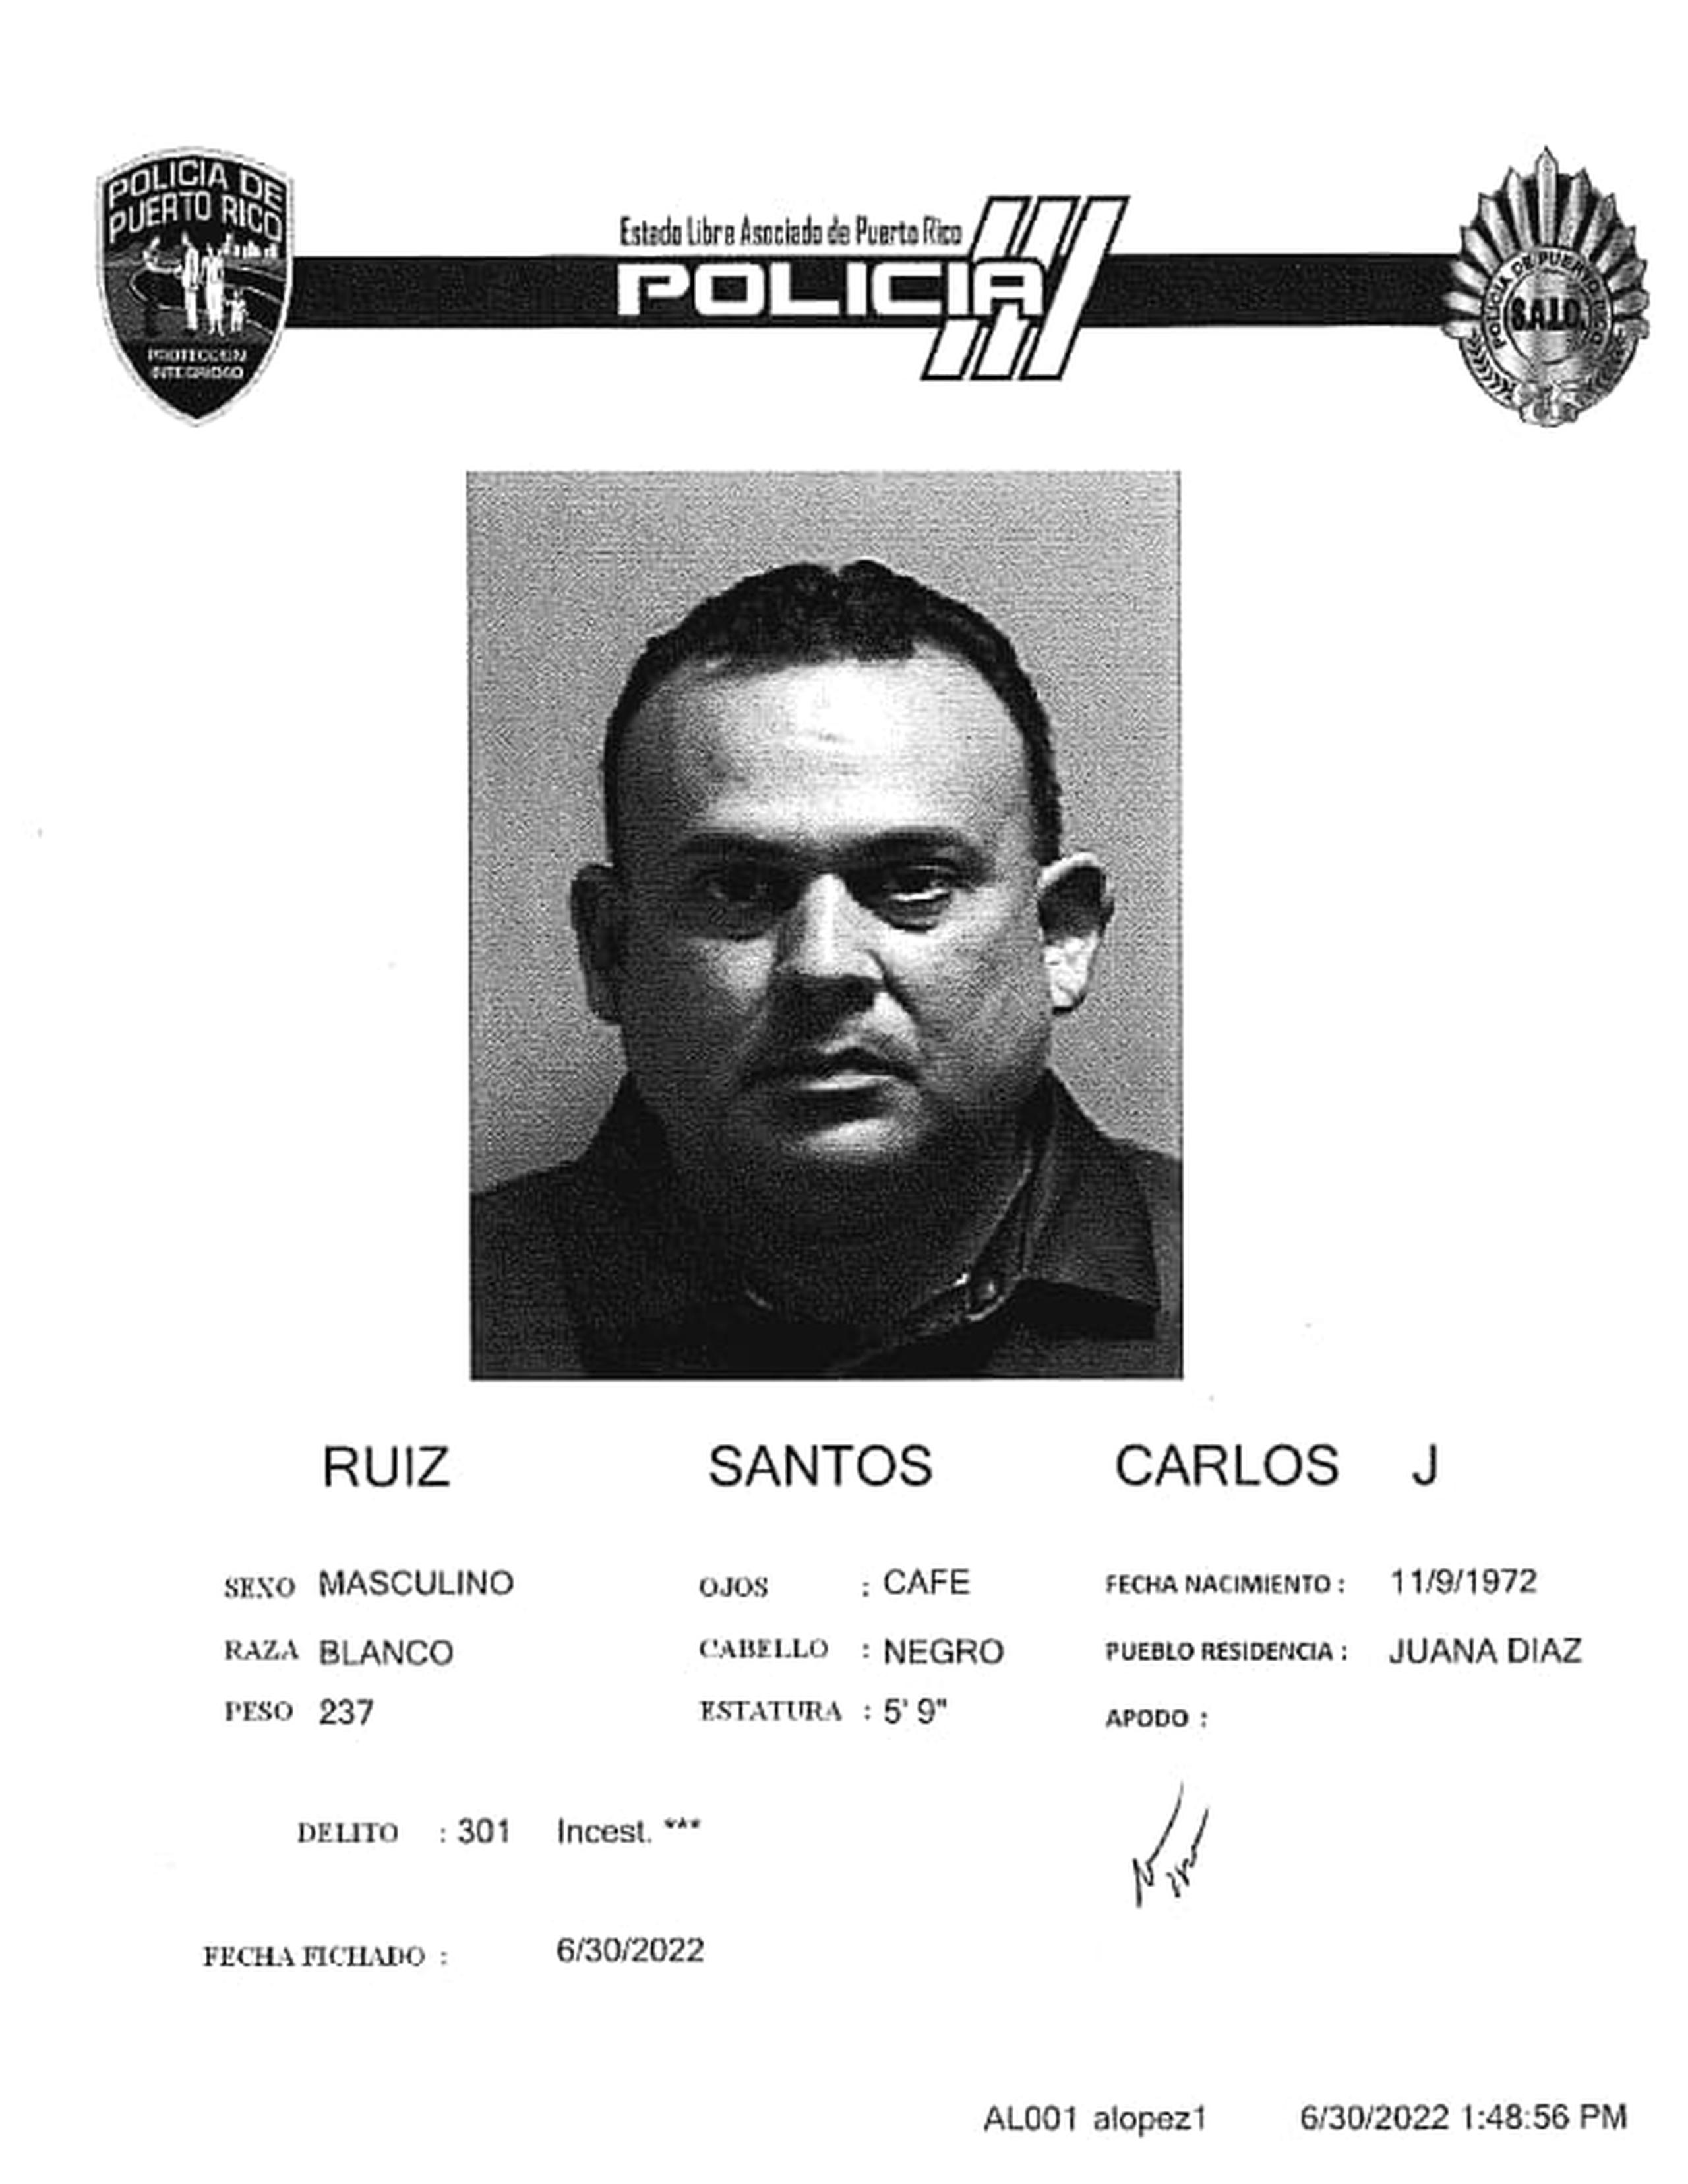 Carlos J. Ruiz Santos de 49 años, fue acusado por dos cargos de incesto.